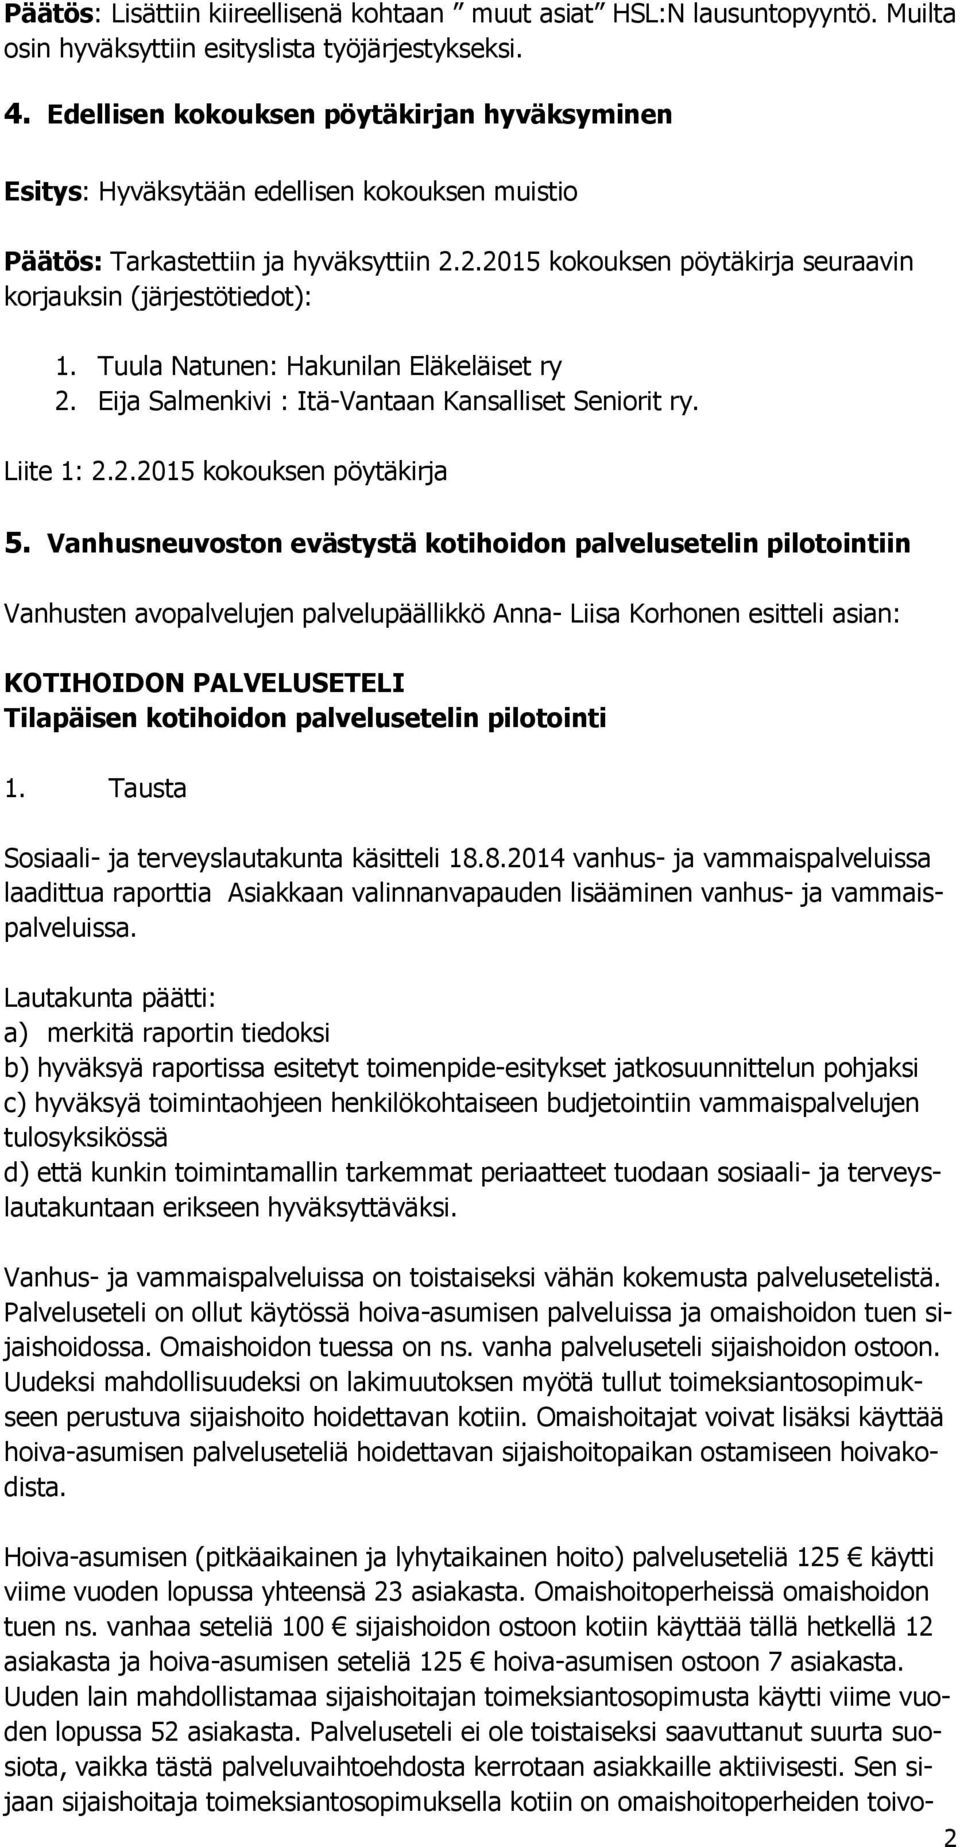 Tuula Natunen: Hakunilan Eläkeläiset ry 2. Eija Salmenkivi : Itä-Vantaan Kansalliset Seniorit ry. Liite 1: 2.2.2015 kokouksen pöytäkirja 5.